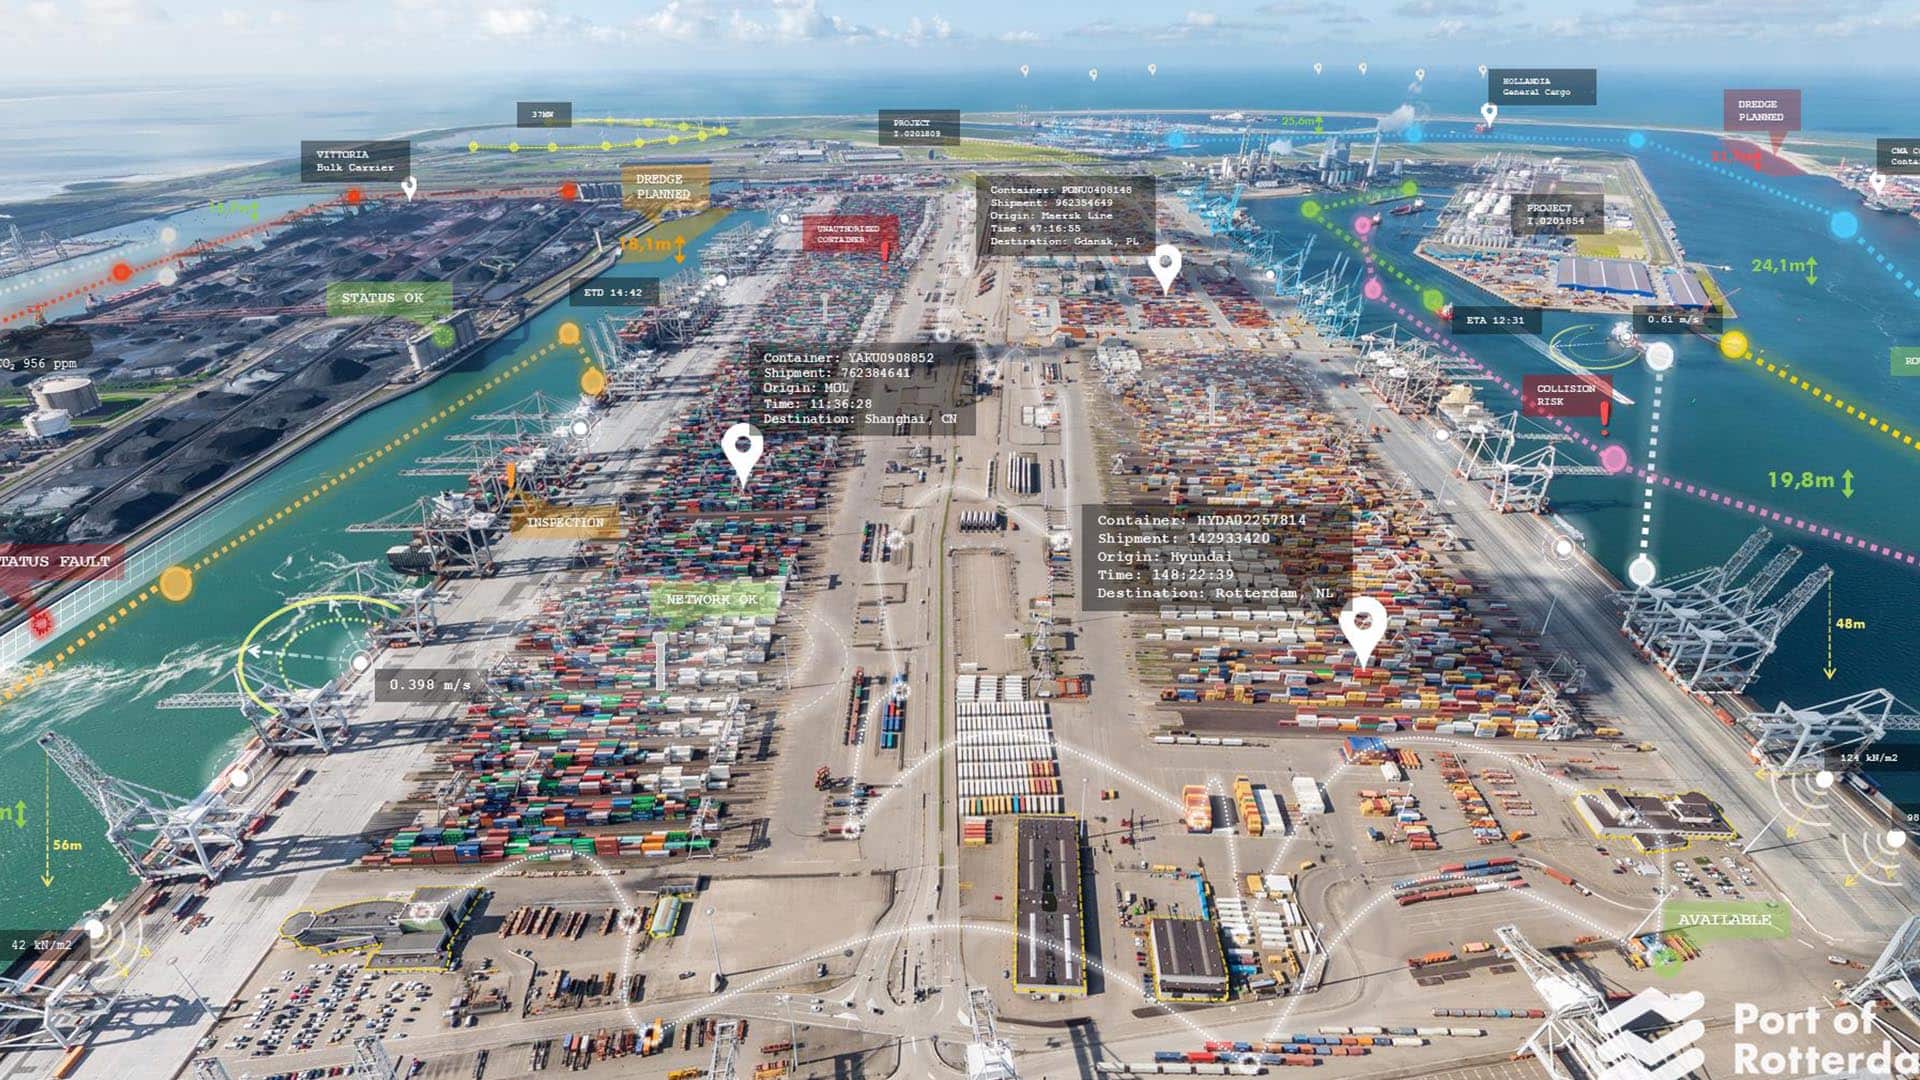 The Port of Rotterdam;s digital twin